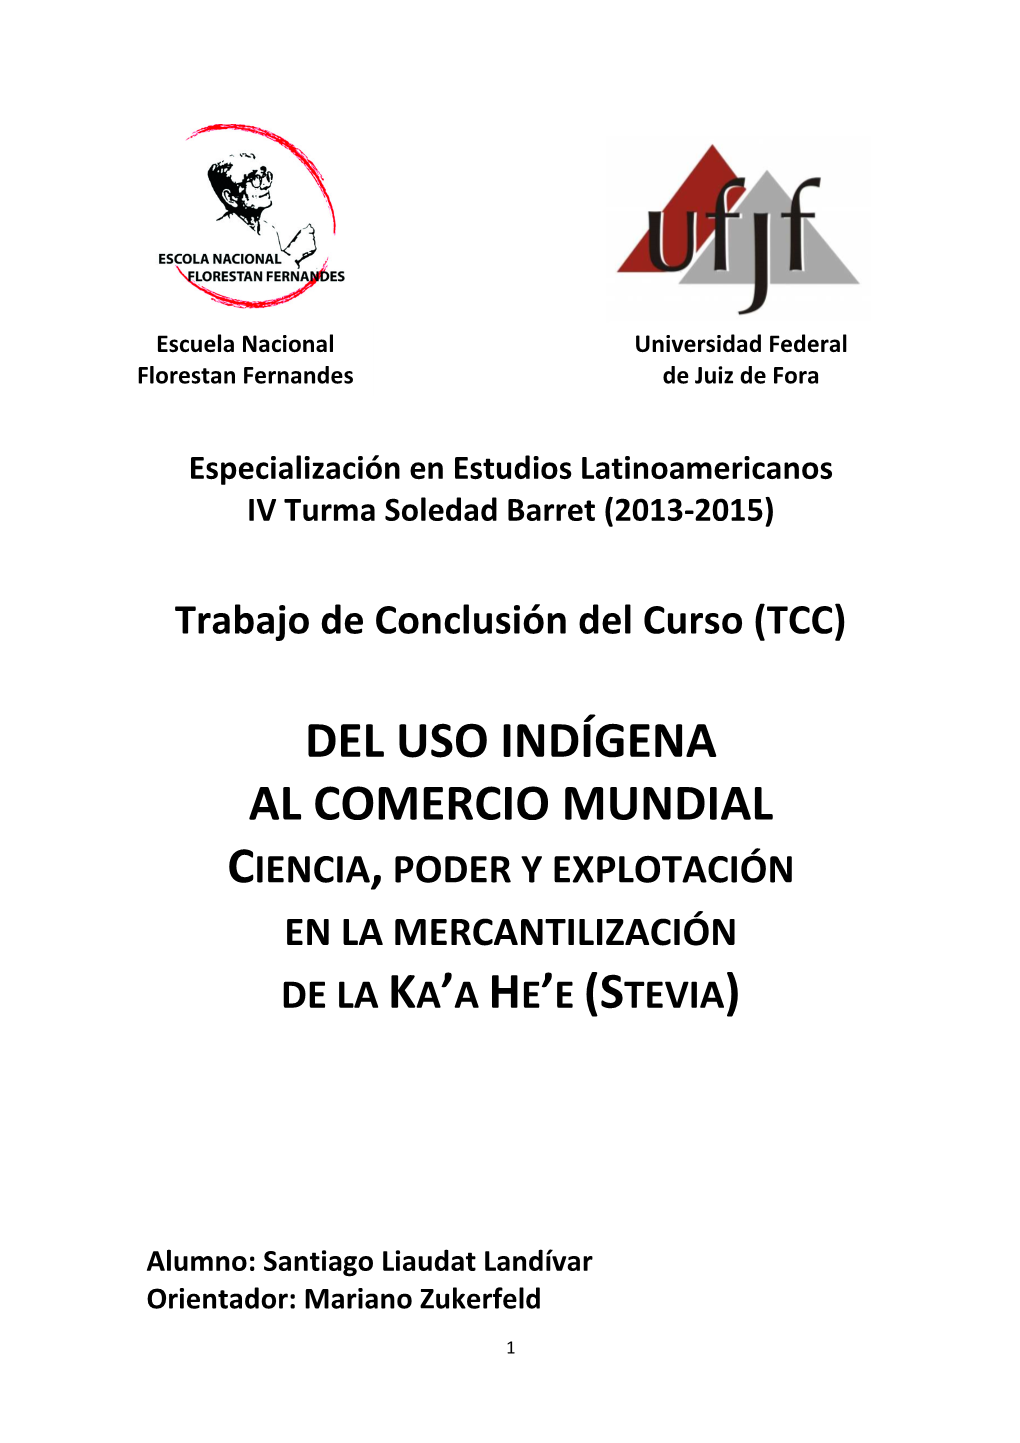 Del Uso Indígena Al Comercio Mundial Ciencia , Poder Y Explotación En La Mercantilización De La Ka’A He’E (S Tevia )